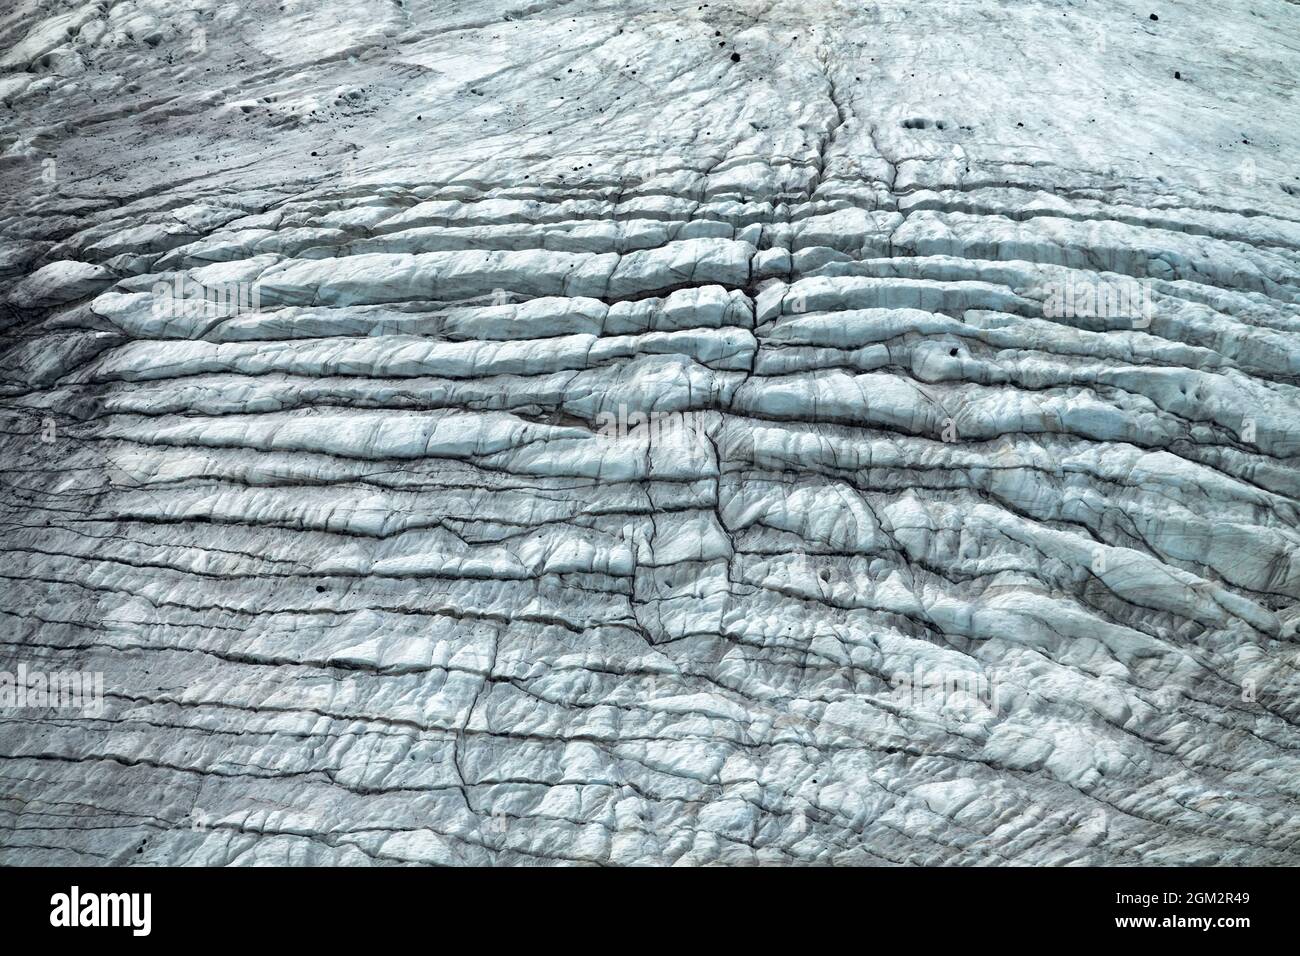 Glaziologie. Berggletscher (alpiner). Gletscheroberfläche - Eisknarren und Mattenstreifen Stockfoto